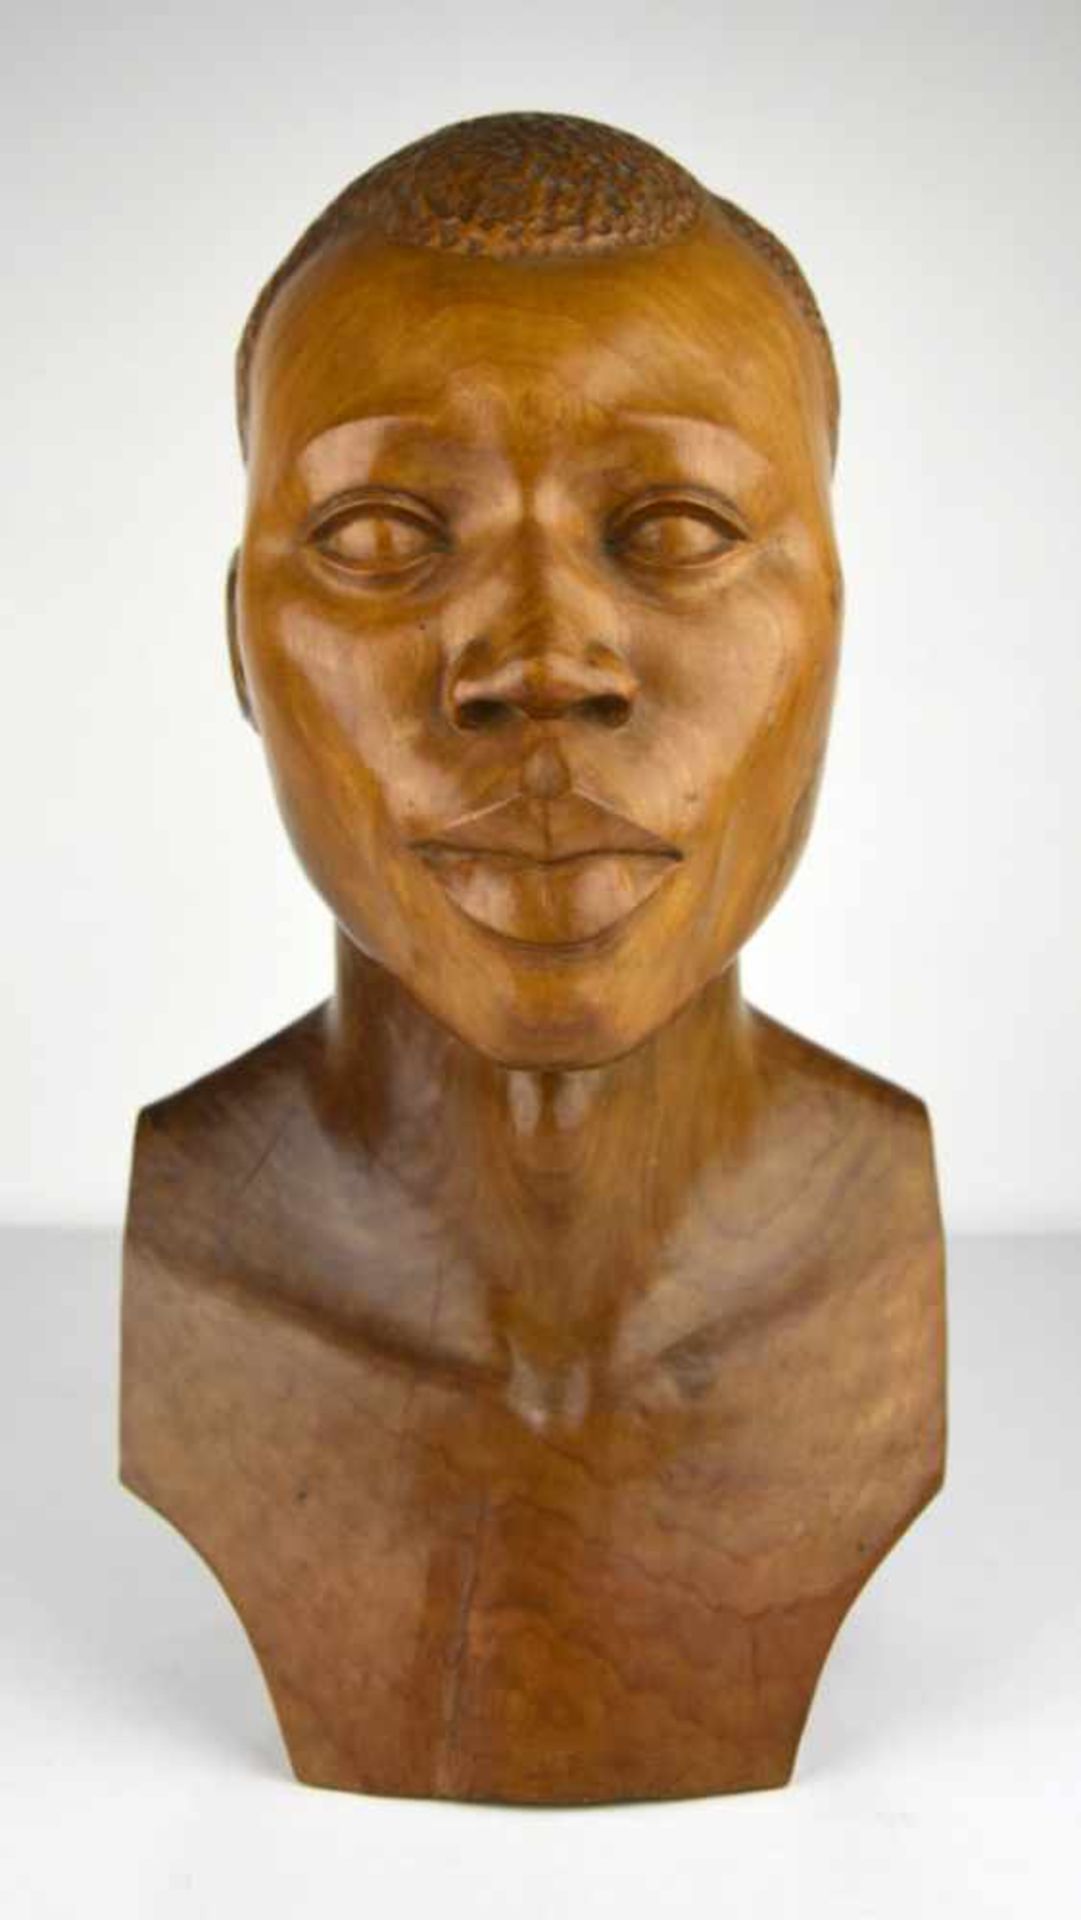 Congo - Man's head sculpted in wood and signed Congo - Tête d'homme sculptée en ronde-bosse En bois,